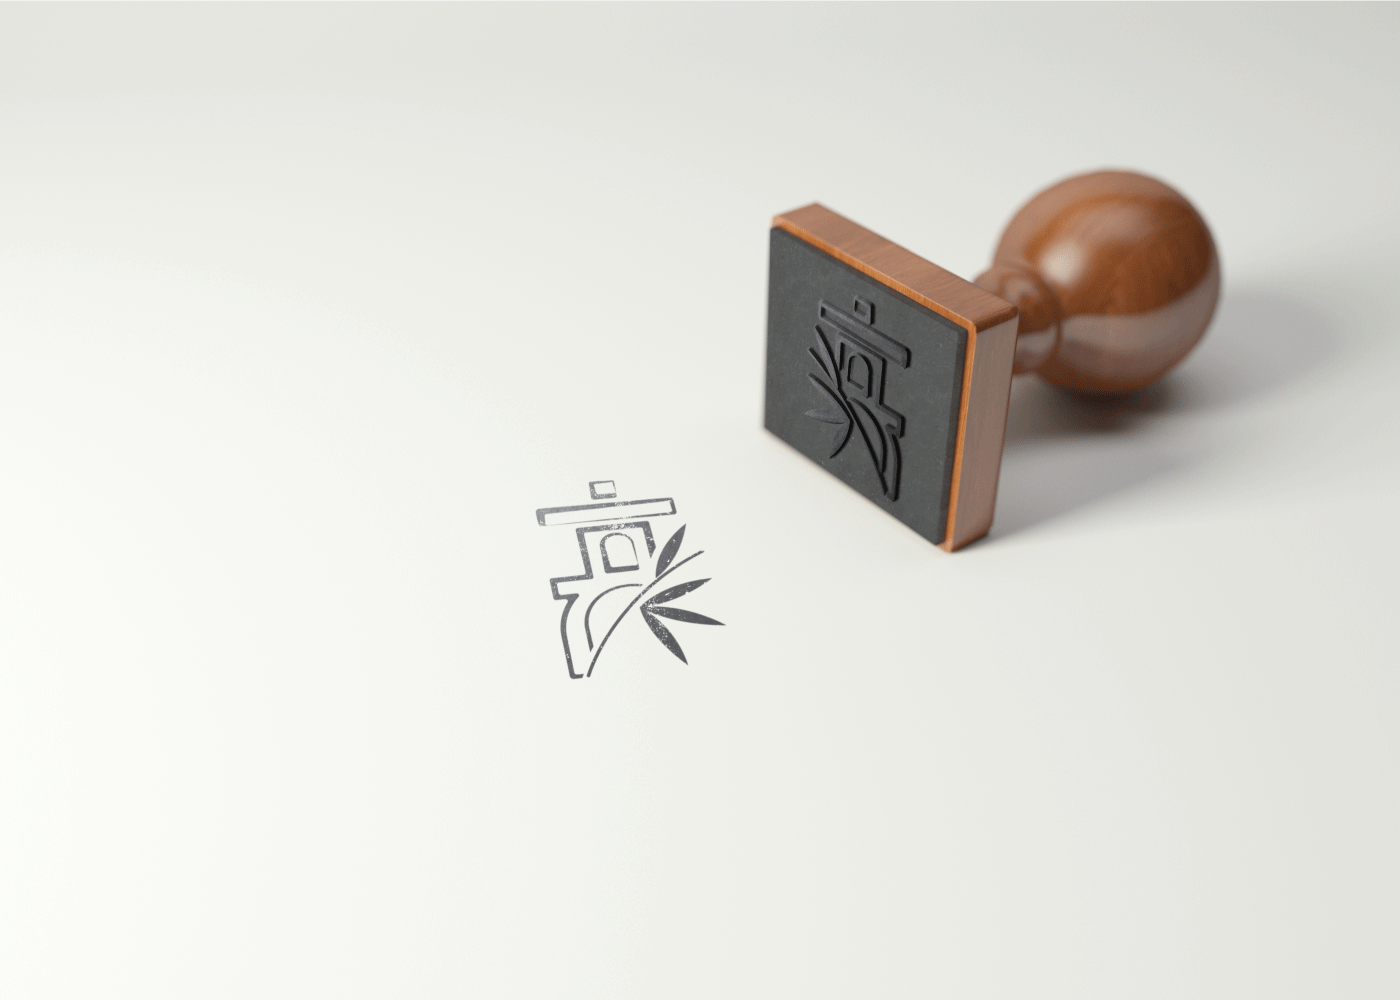 thiết kế nhận diện thương hiệu arashiyama